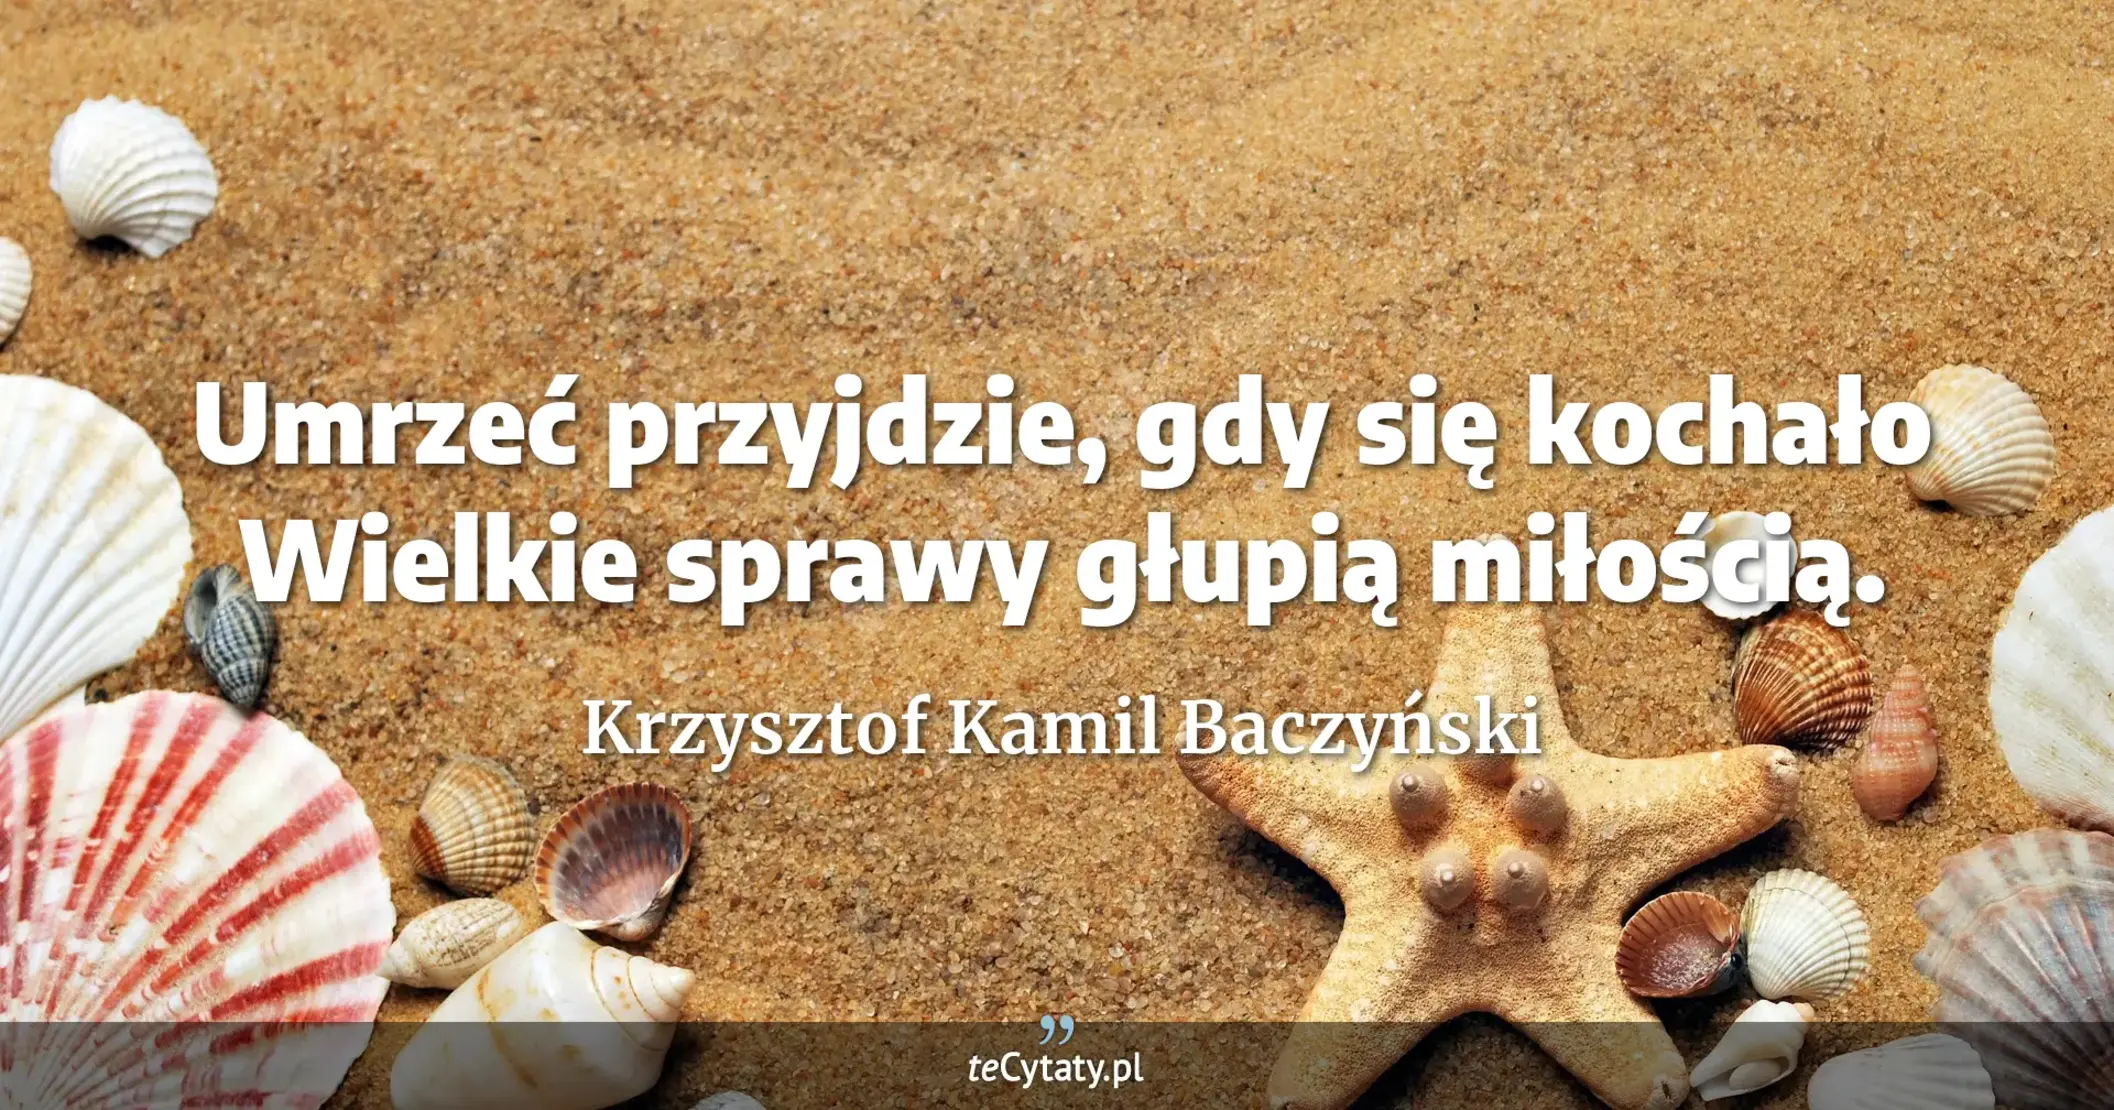 Umrzeć przyjdzie, gdy się kochało <br> Wielkie sprawy głupią miłością. - Krzysztof Kamil Baczyński